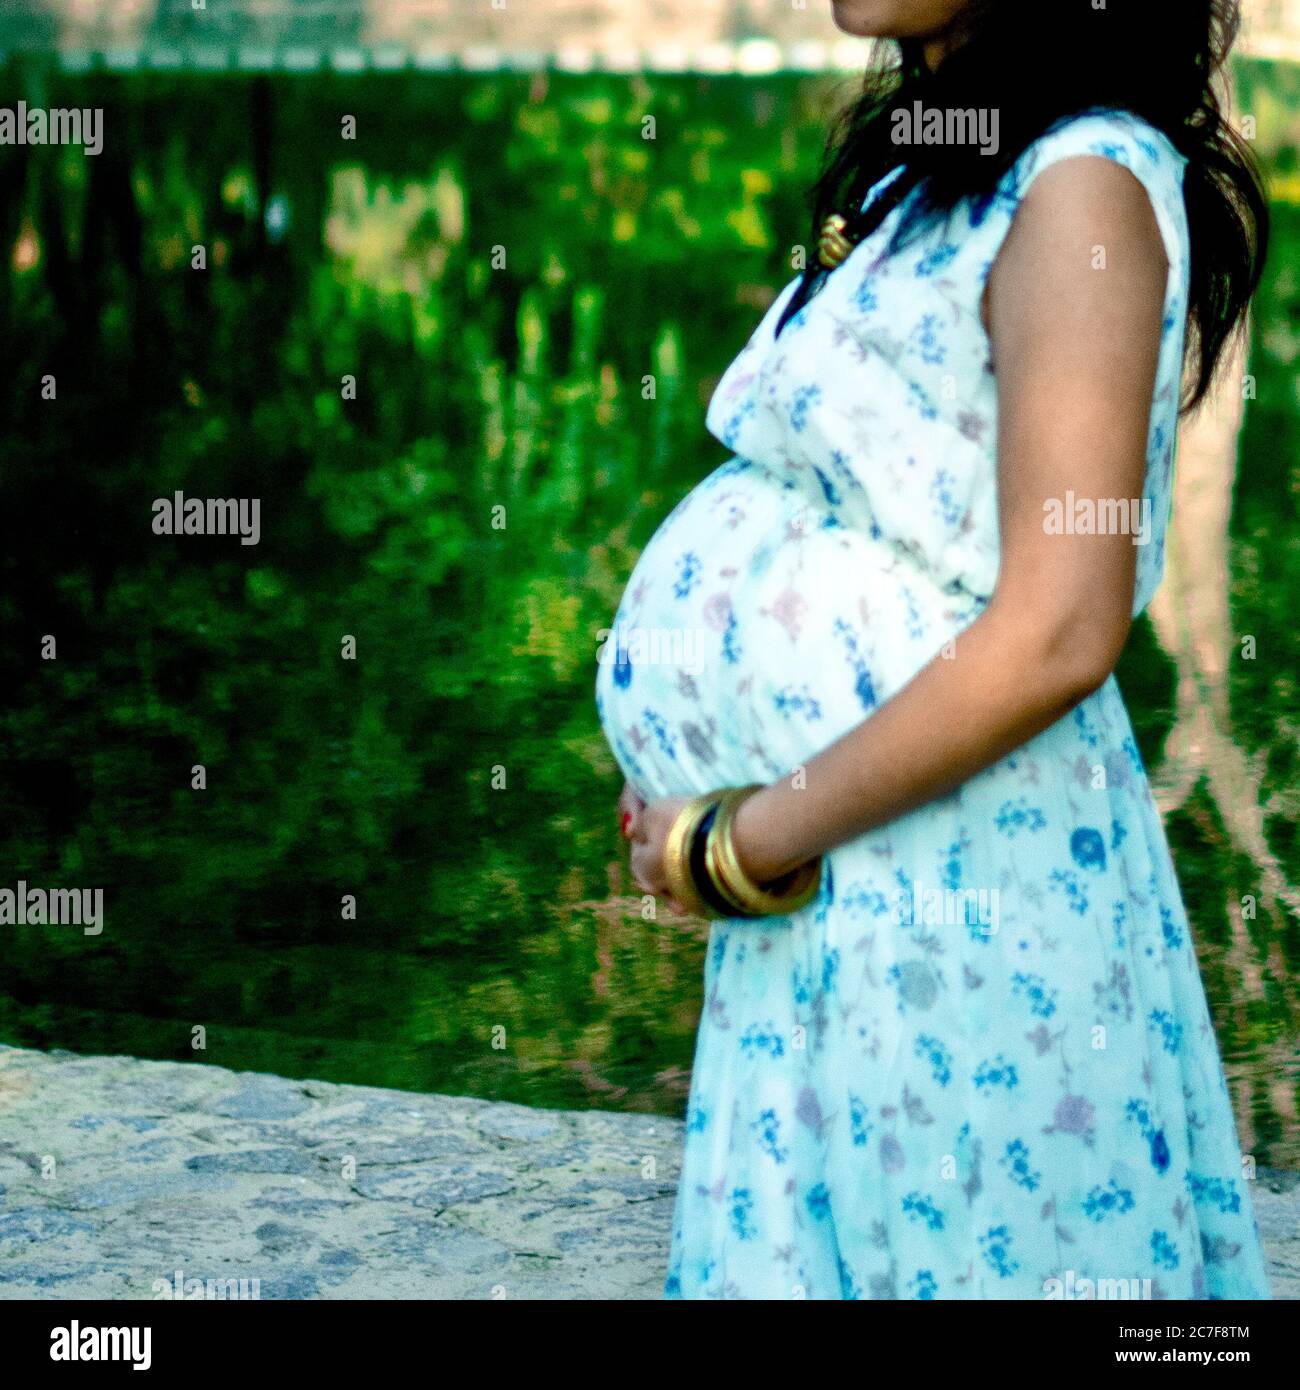 Pose de maternité pour accueillir un nouveau-né dans Lodhi Road à Delhi Inde, séance photo de maternité réalisée par les parents pour accueillir leur enfant pendant Banque D'Images